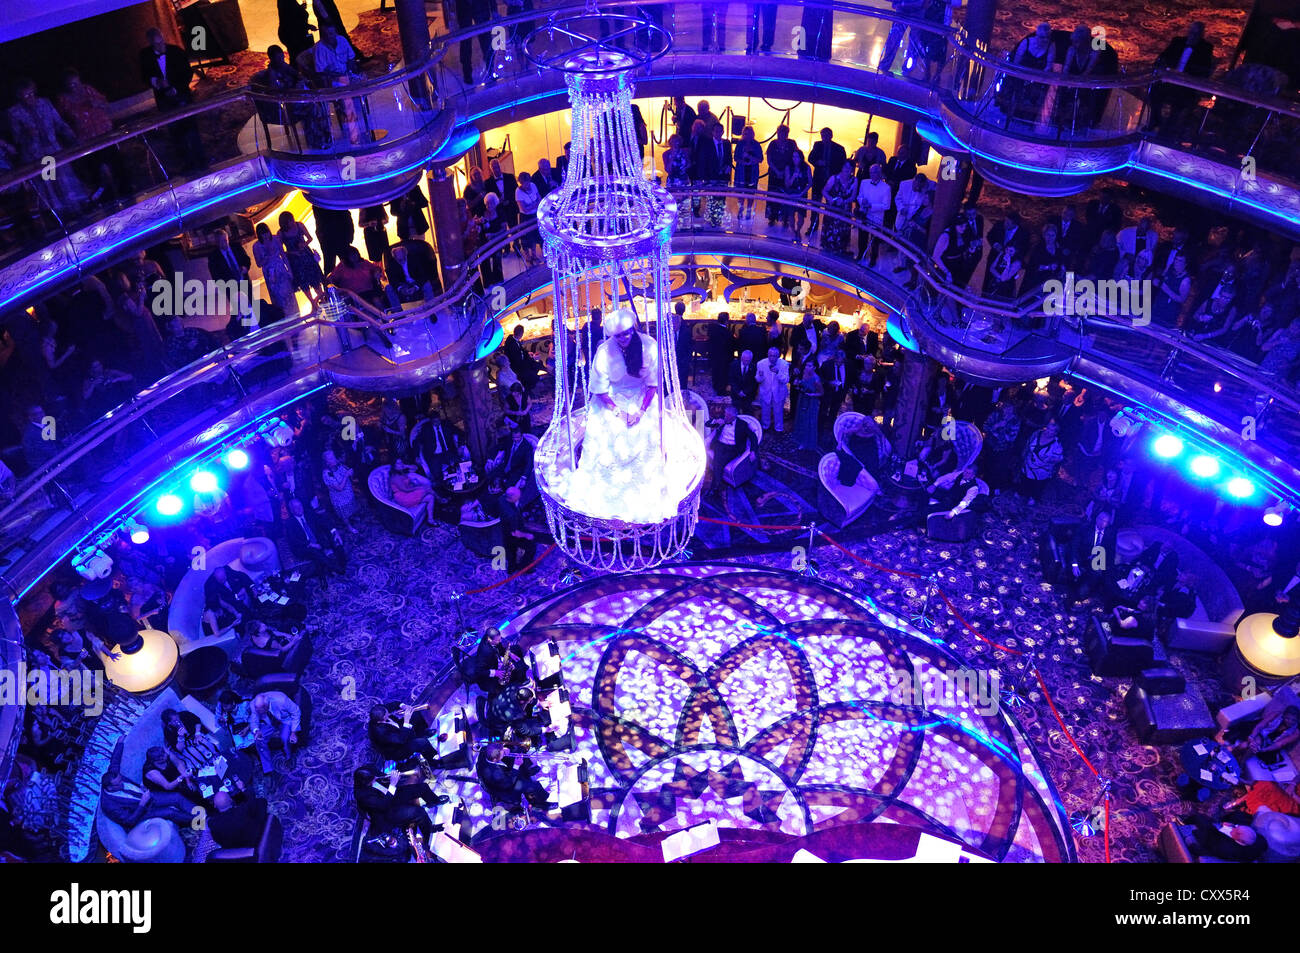 Atrium-Trapez-Show im Royal Caribbean "Grandeur of the Seas" Kreuzfahrt Schiff, Adria, Mittelmeer, Europa Stockfoto